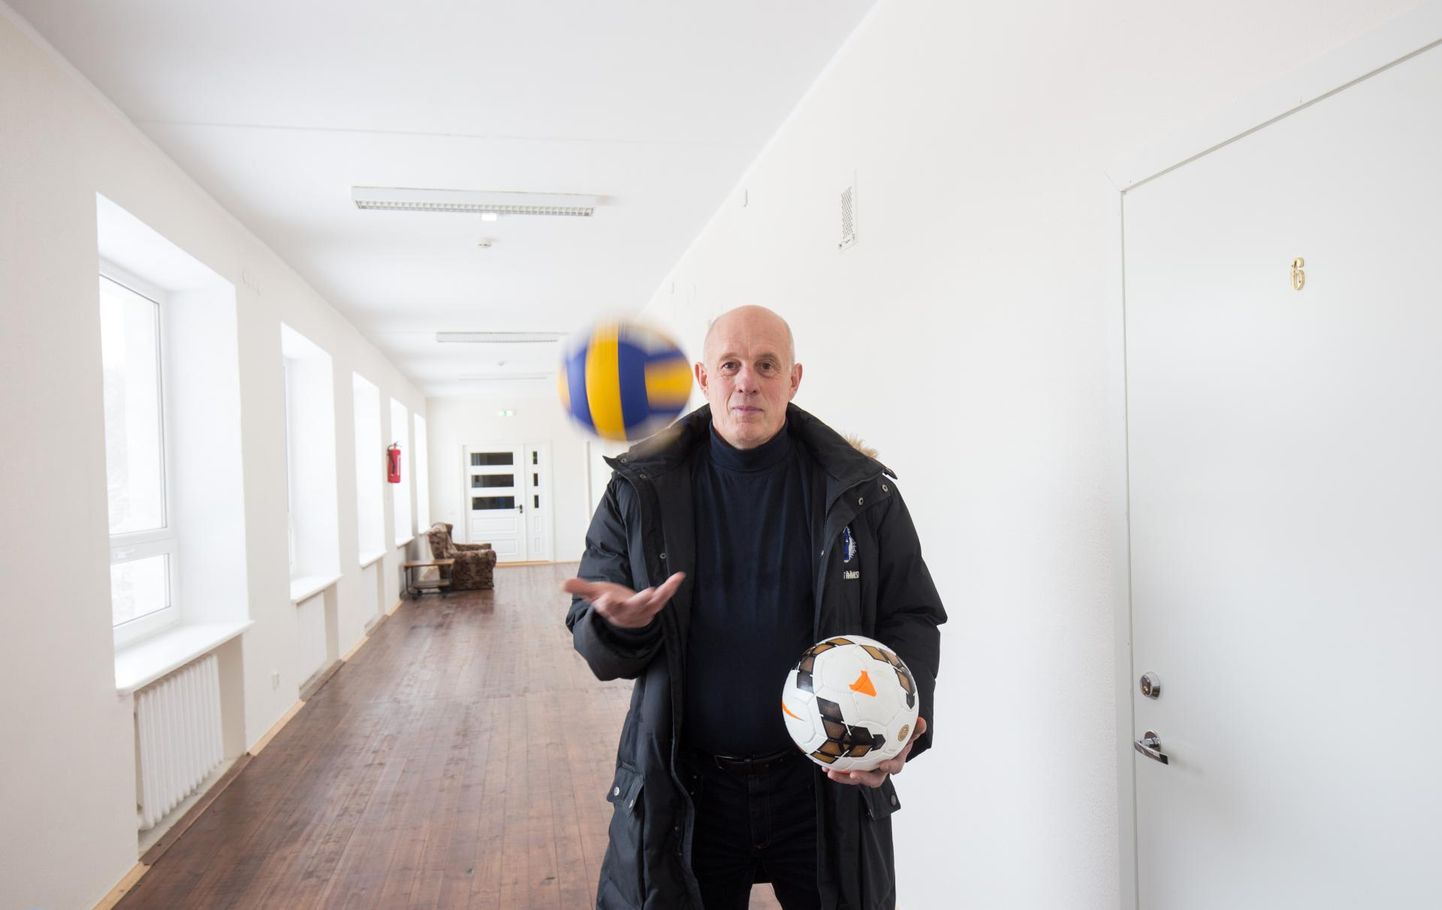 Tääksi spordiklubi juht Toomas Aavasalu kogub septembris klubis tööle asunud Ukraina jalgpallitreeneri kodulinna elanikele annetuste toel abi, mille ta koos pojaga detsembris kohale viib.